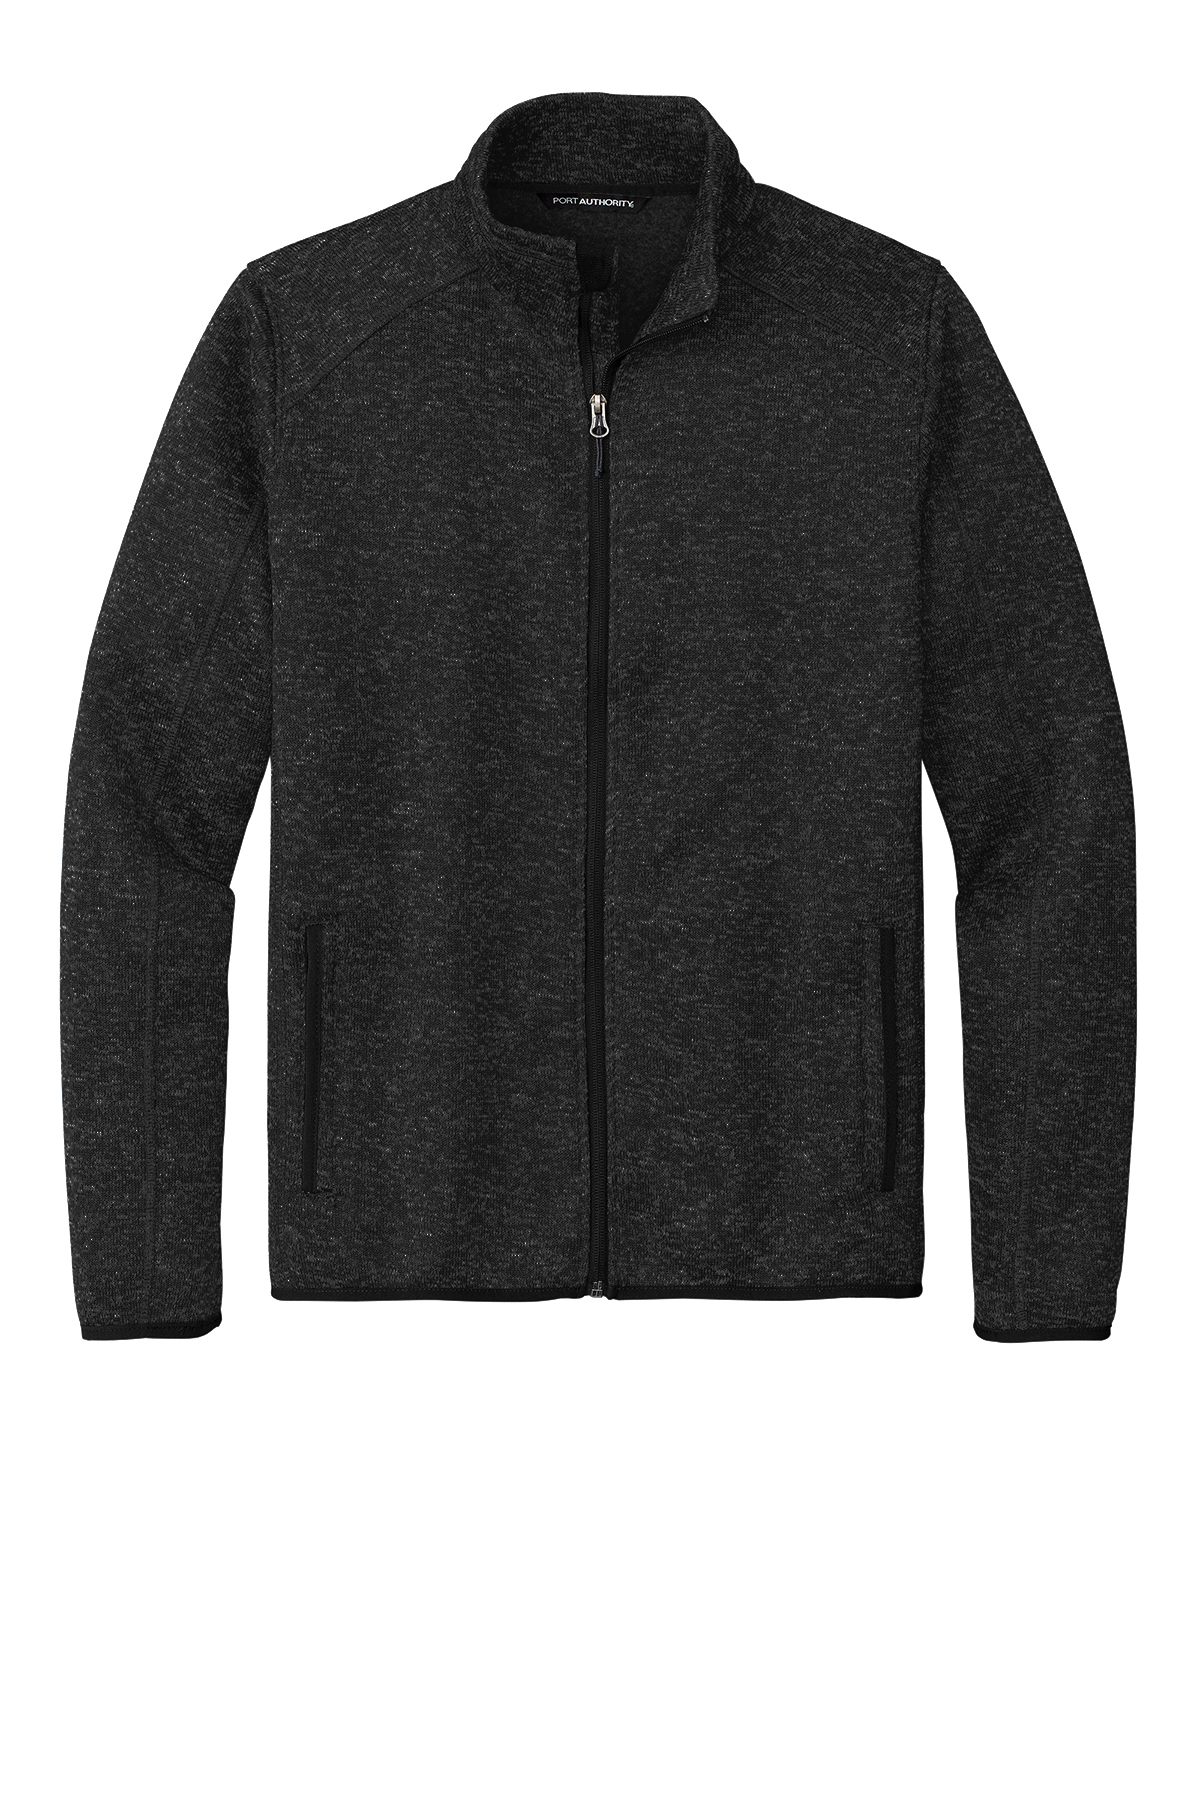 Port Authority Sweater Fleece Jacket, Product